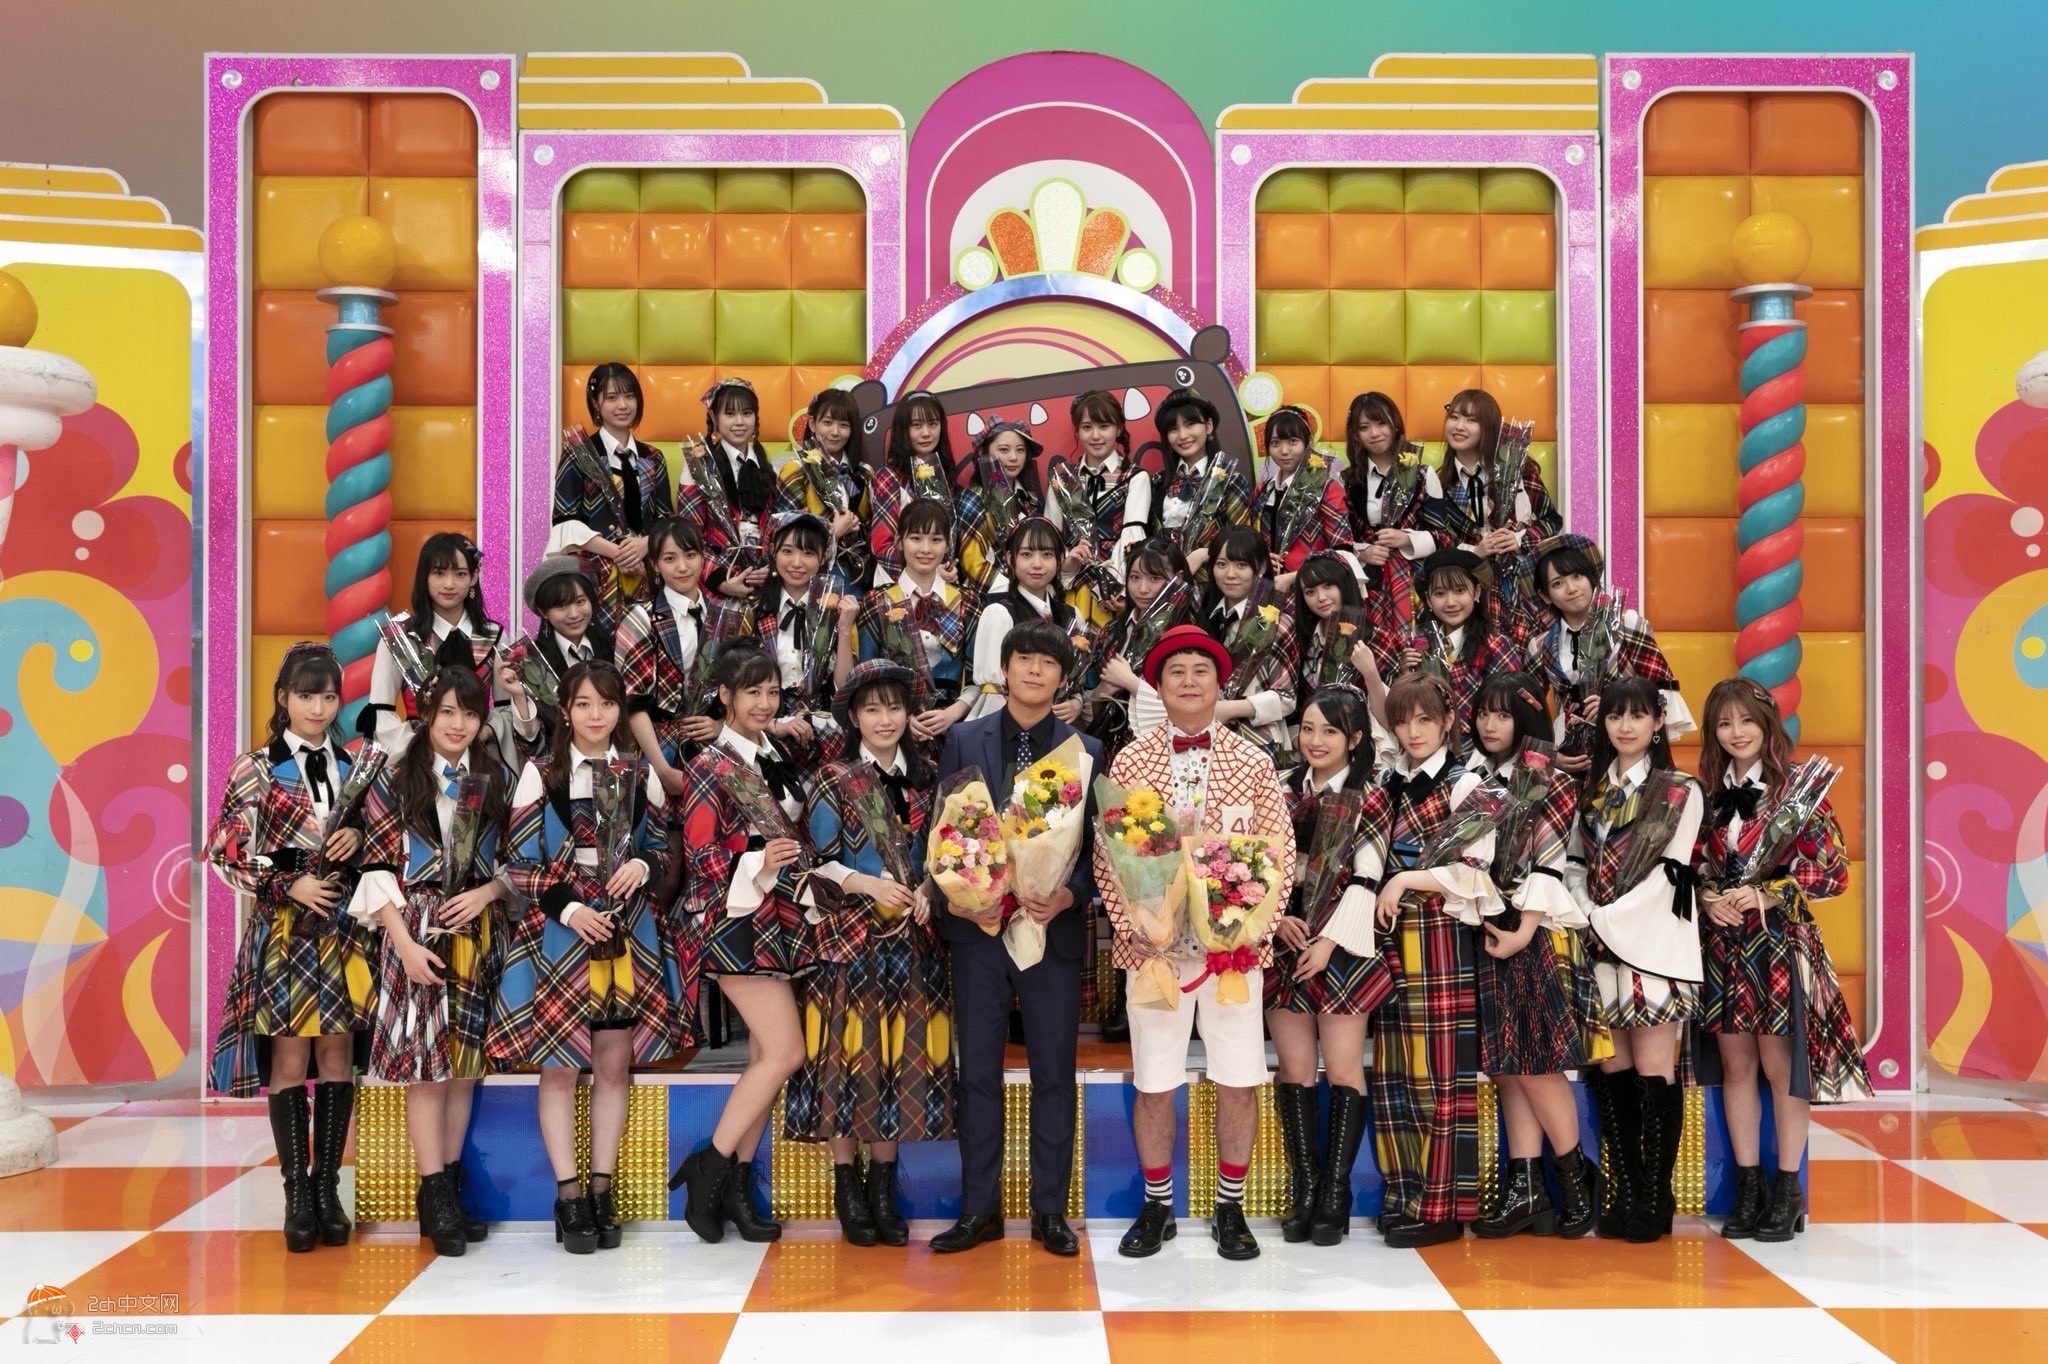 2ch：初期的AKB48和现在的AKB48对比